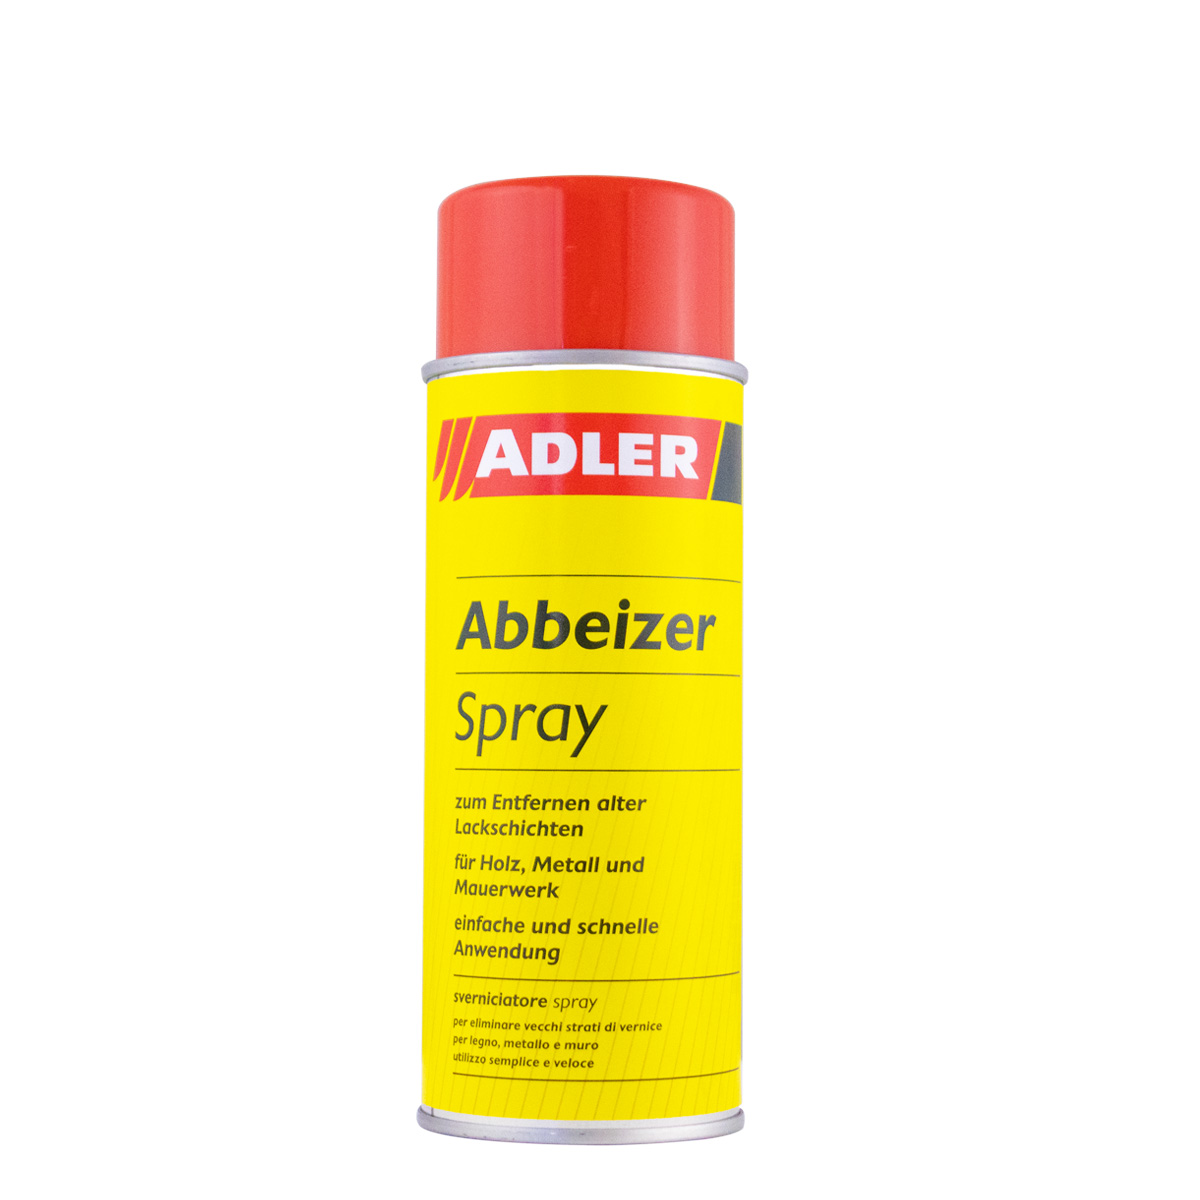 adler_abbeizer_spray_300ml_gross